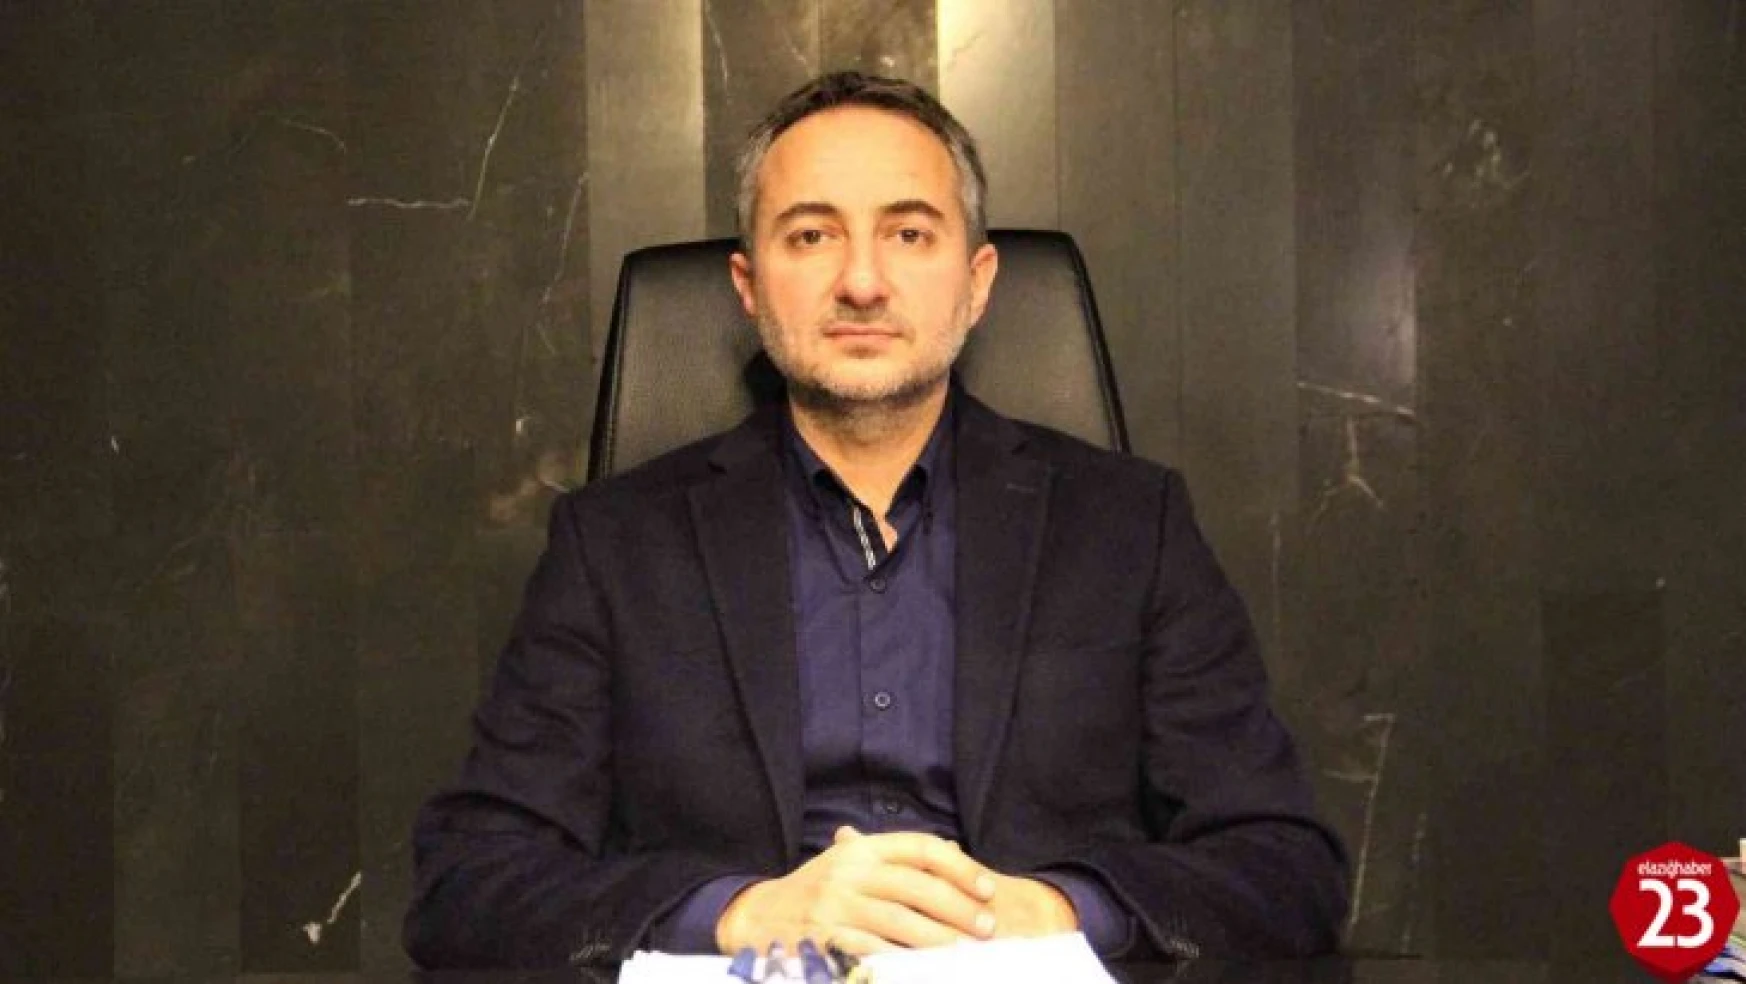 Elazığ TSO Başkanı Arslan: 'Seçimde aday olmama kararı aldım'